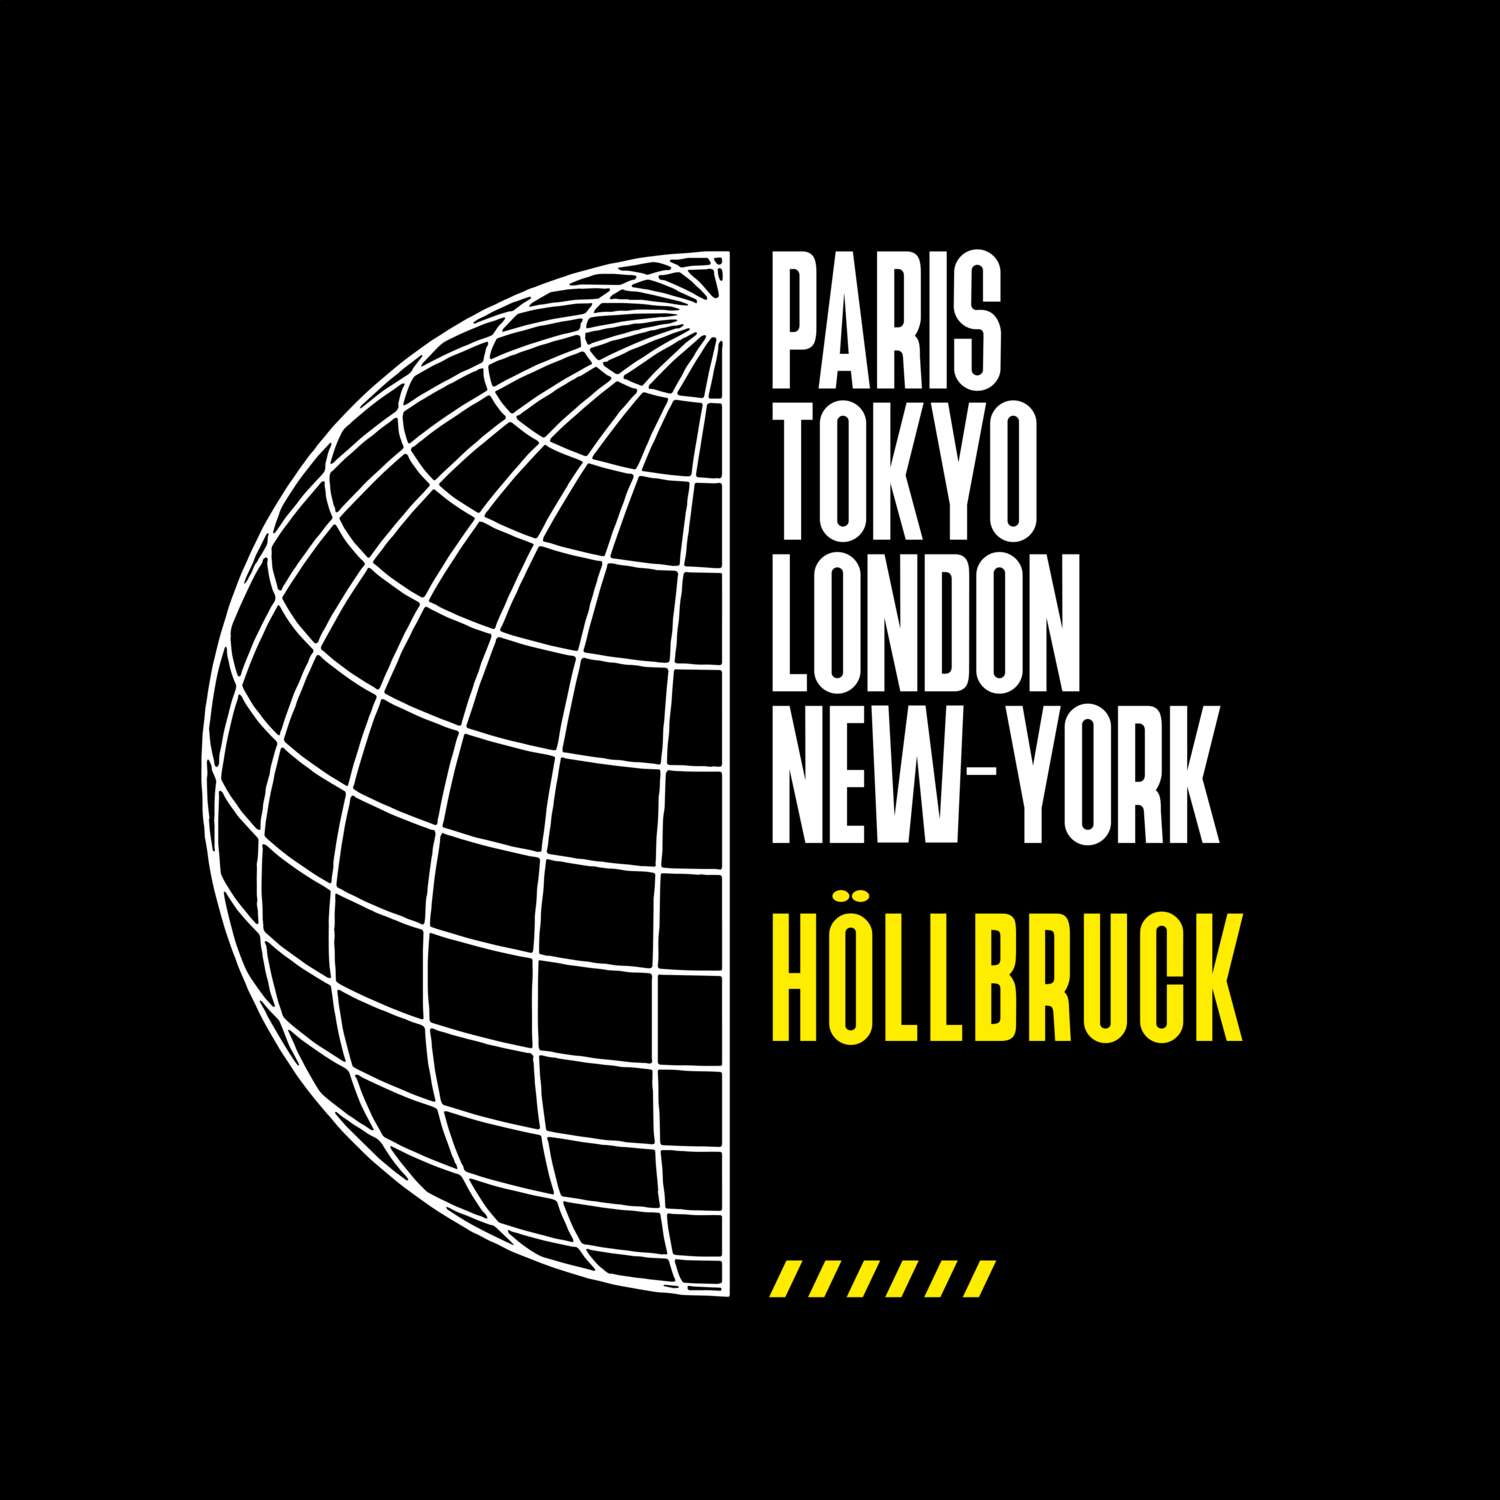 Höllbruck T-Shirt »Paris Tokyo London«